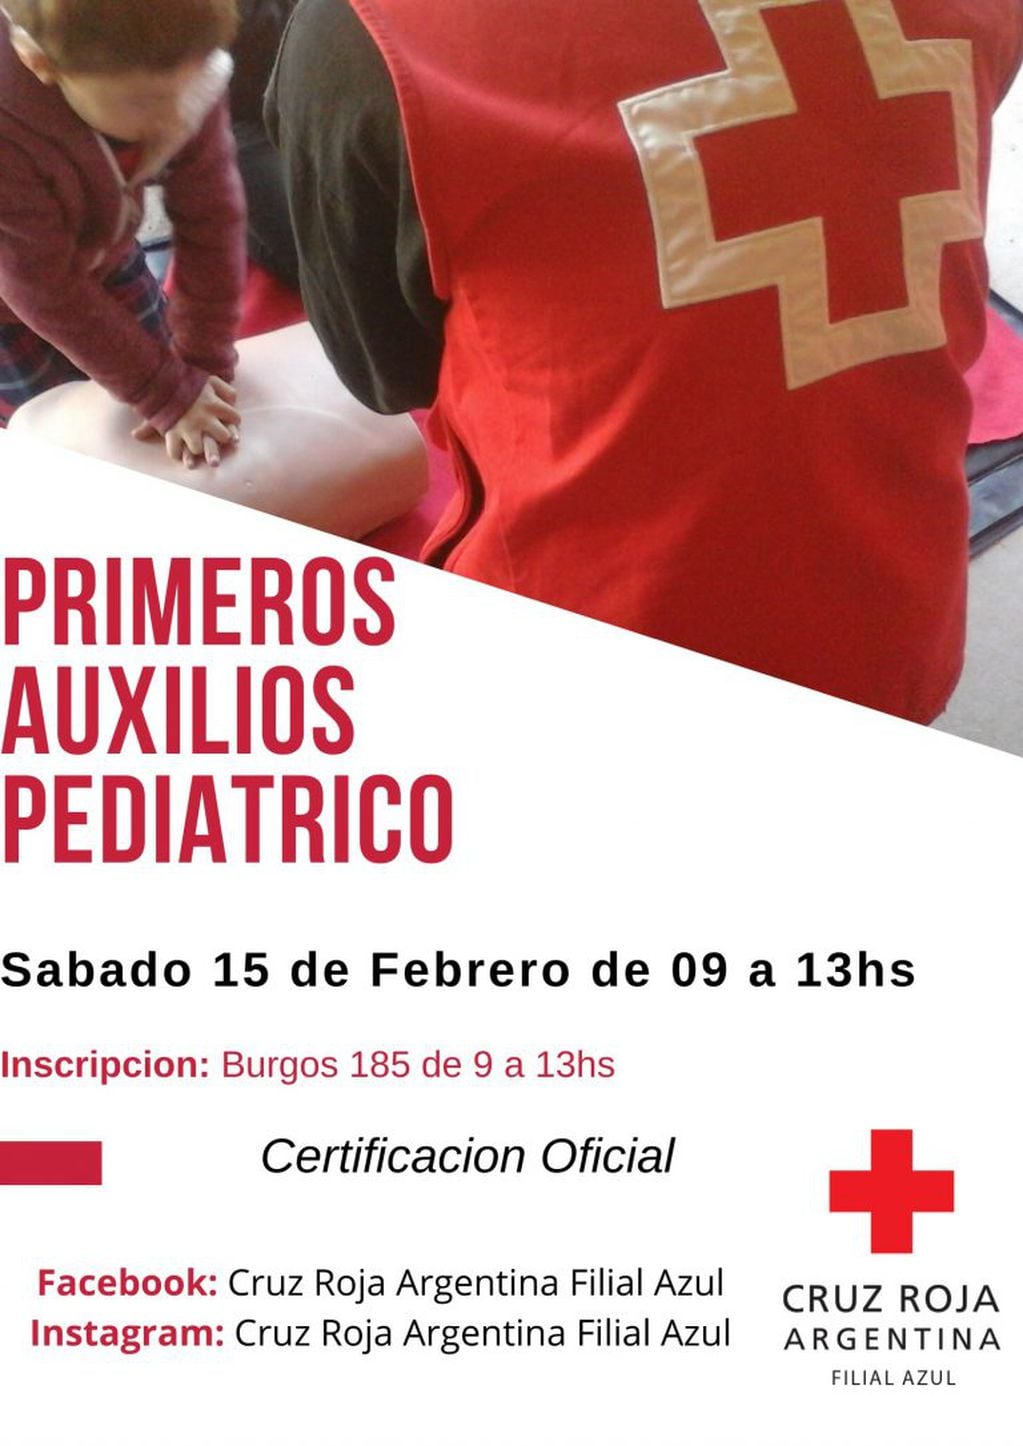 La Cruz Roja Argentina Filial Azul estará dictando un nuevo curso de Primeros Auxilios Pediátricos